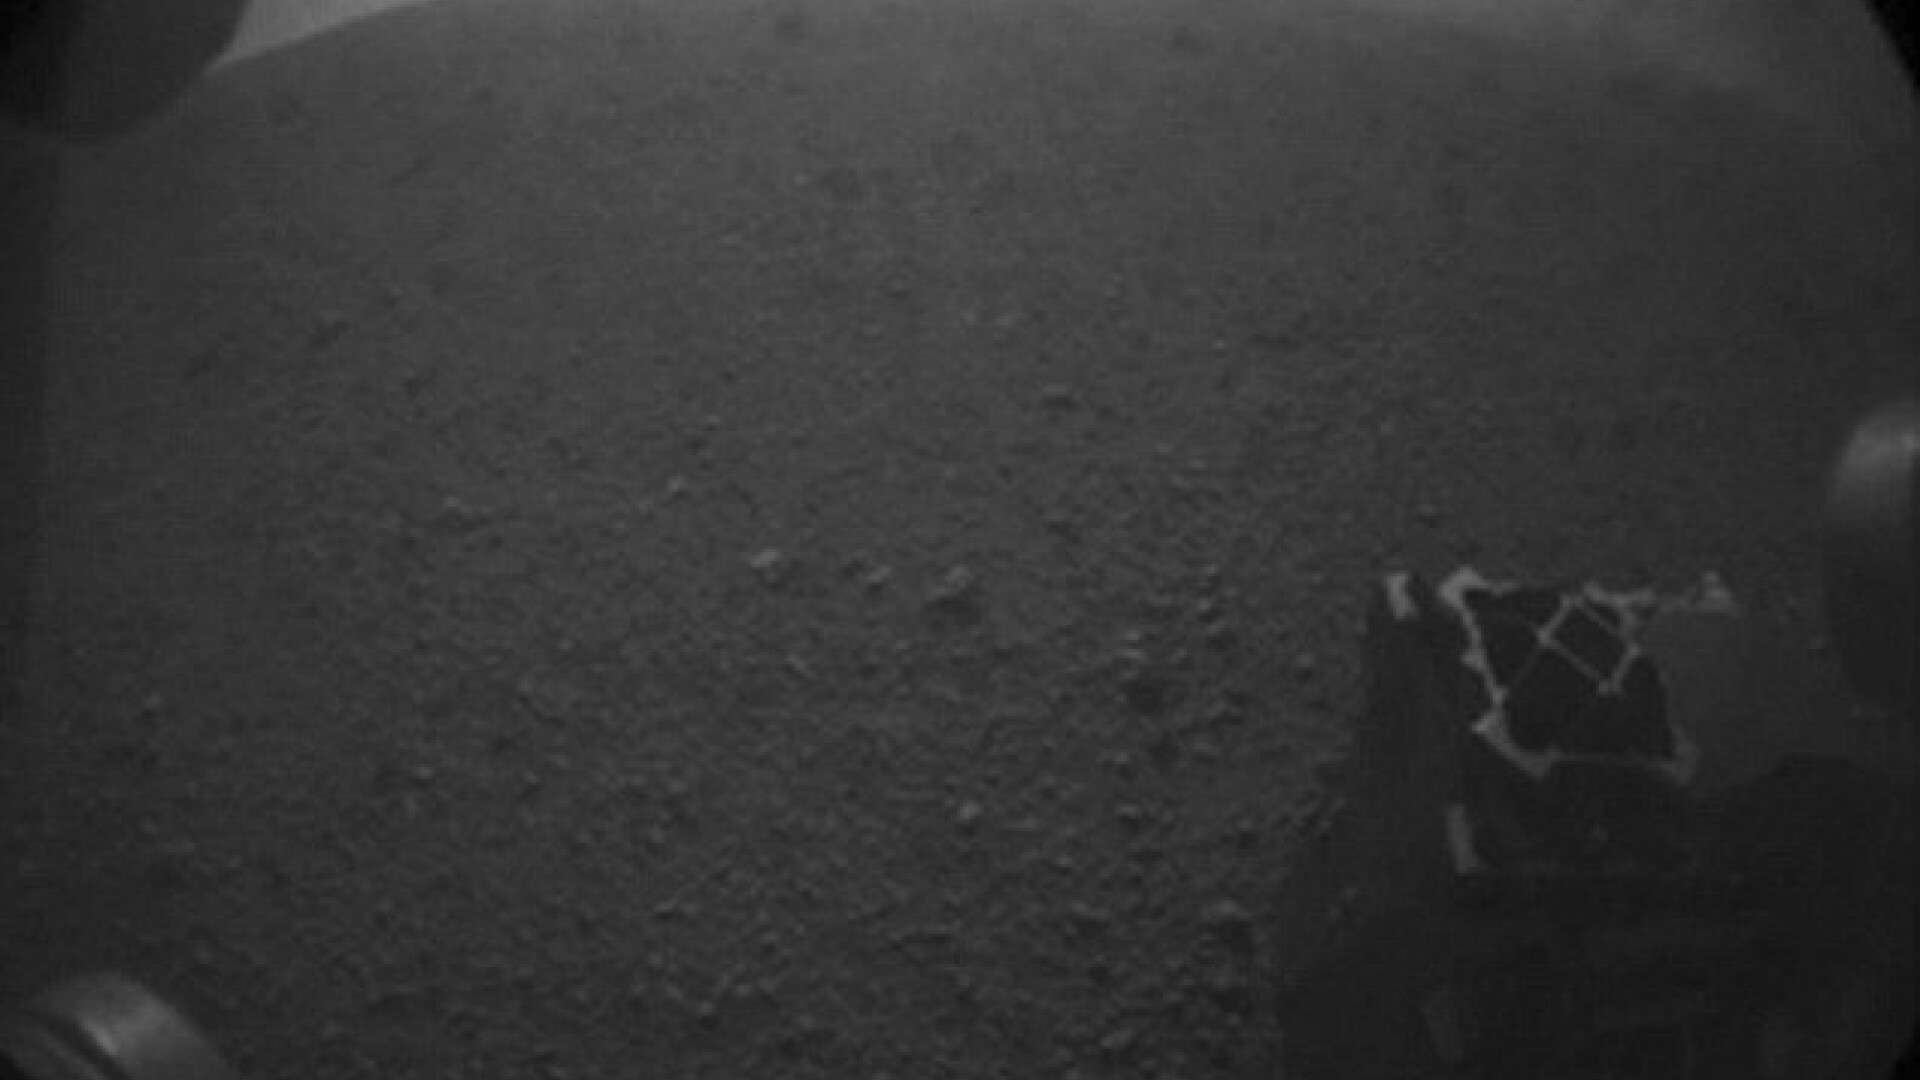 fotografie pe Marte, Curiosity